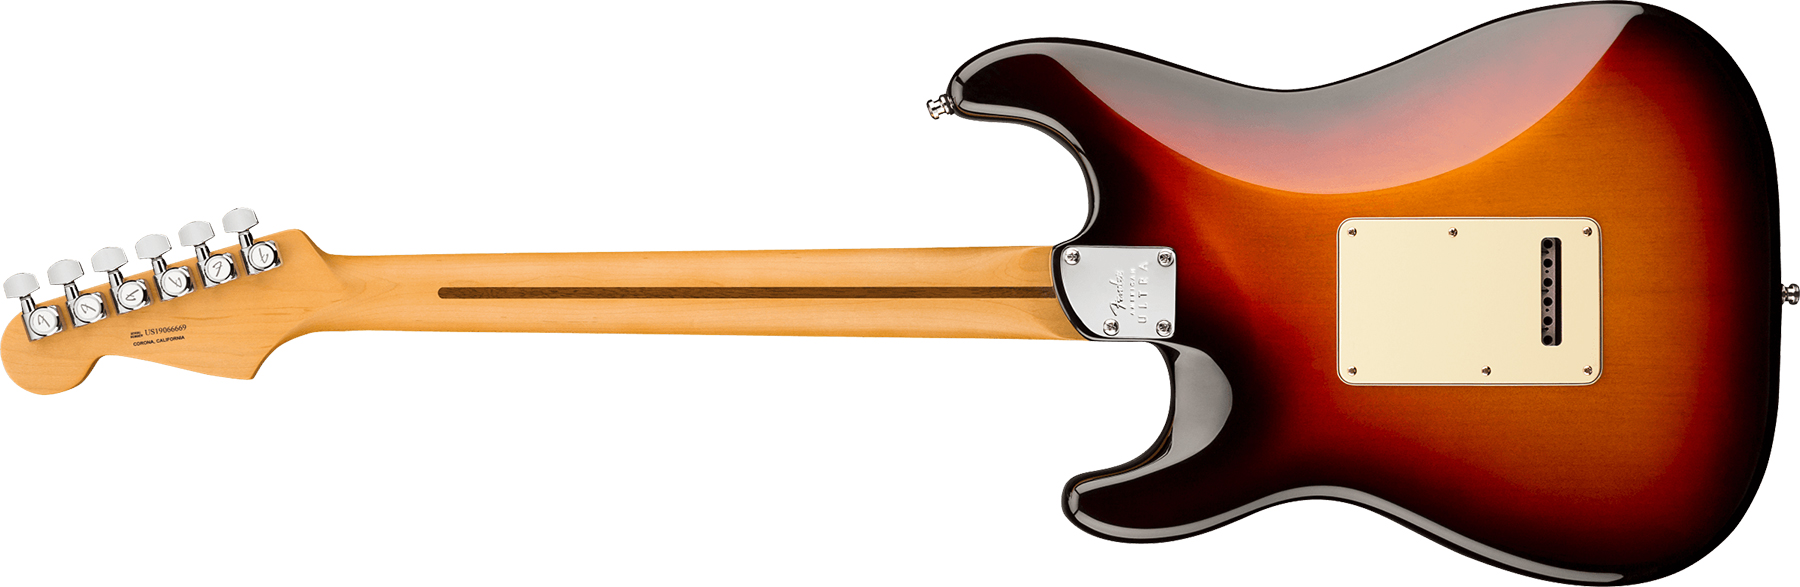 Fender Strat American Ultra Hss 2019 Usa Mn - Ultraburst - Guitarra eléctrica con forma de str. - Variation 1